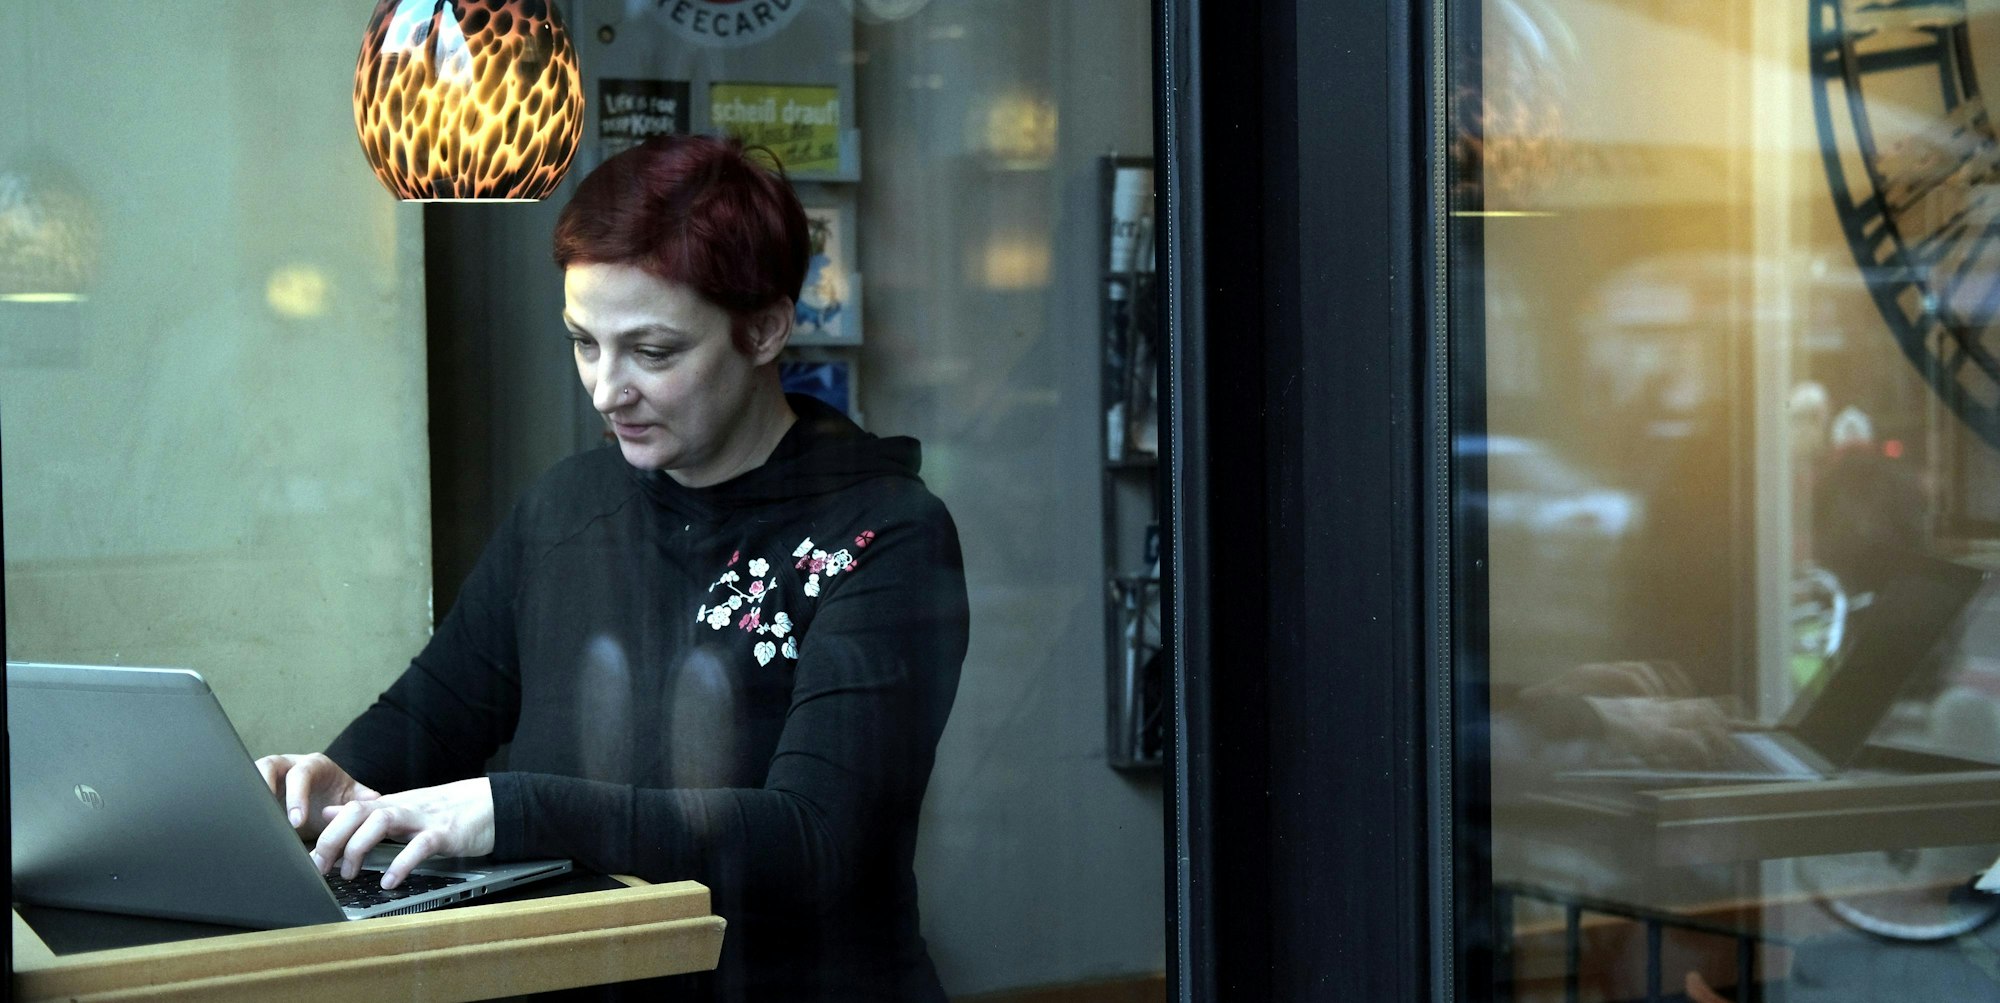 Katja Seide, die derzeit noch in Elternzeit ist, schreibt am liebsten im Café. Dort hat sie einen Stammplatz am Fenster.